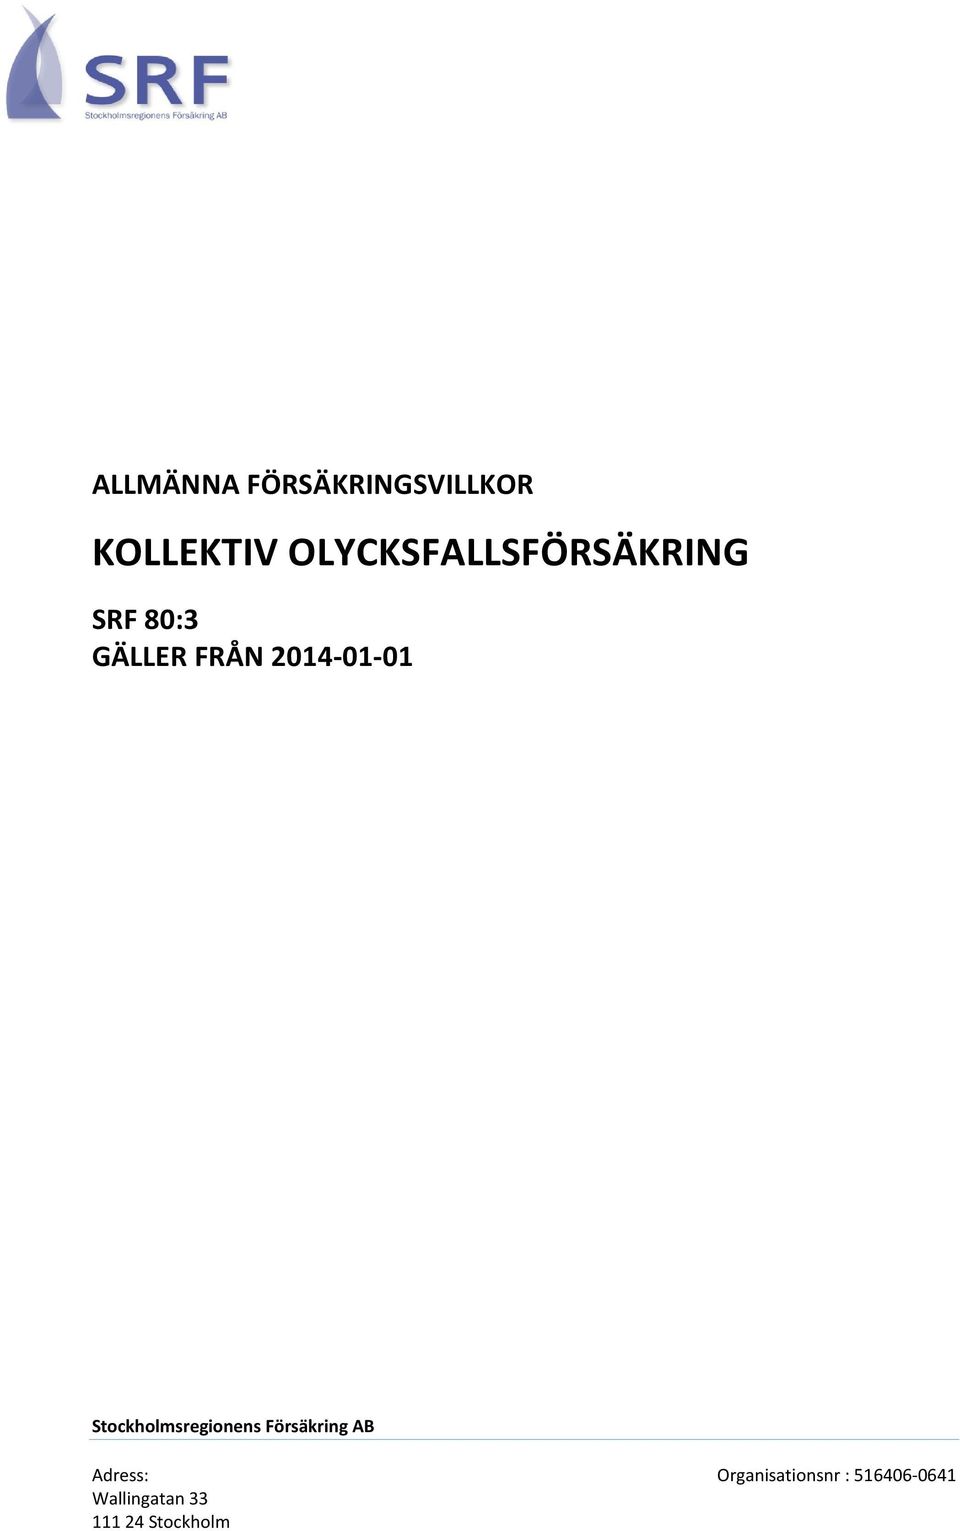 2014-01-01 Stockholmsregionens Försäkring AB